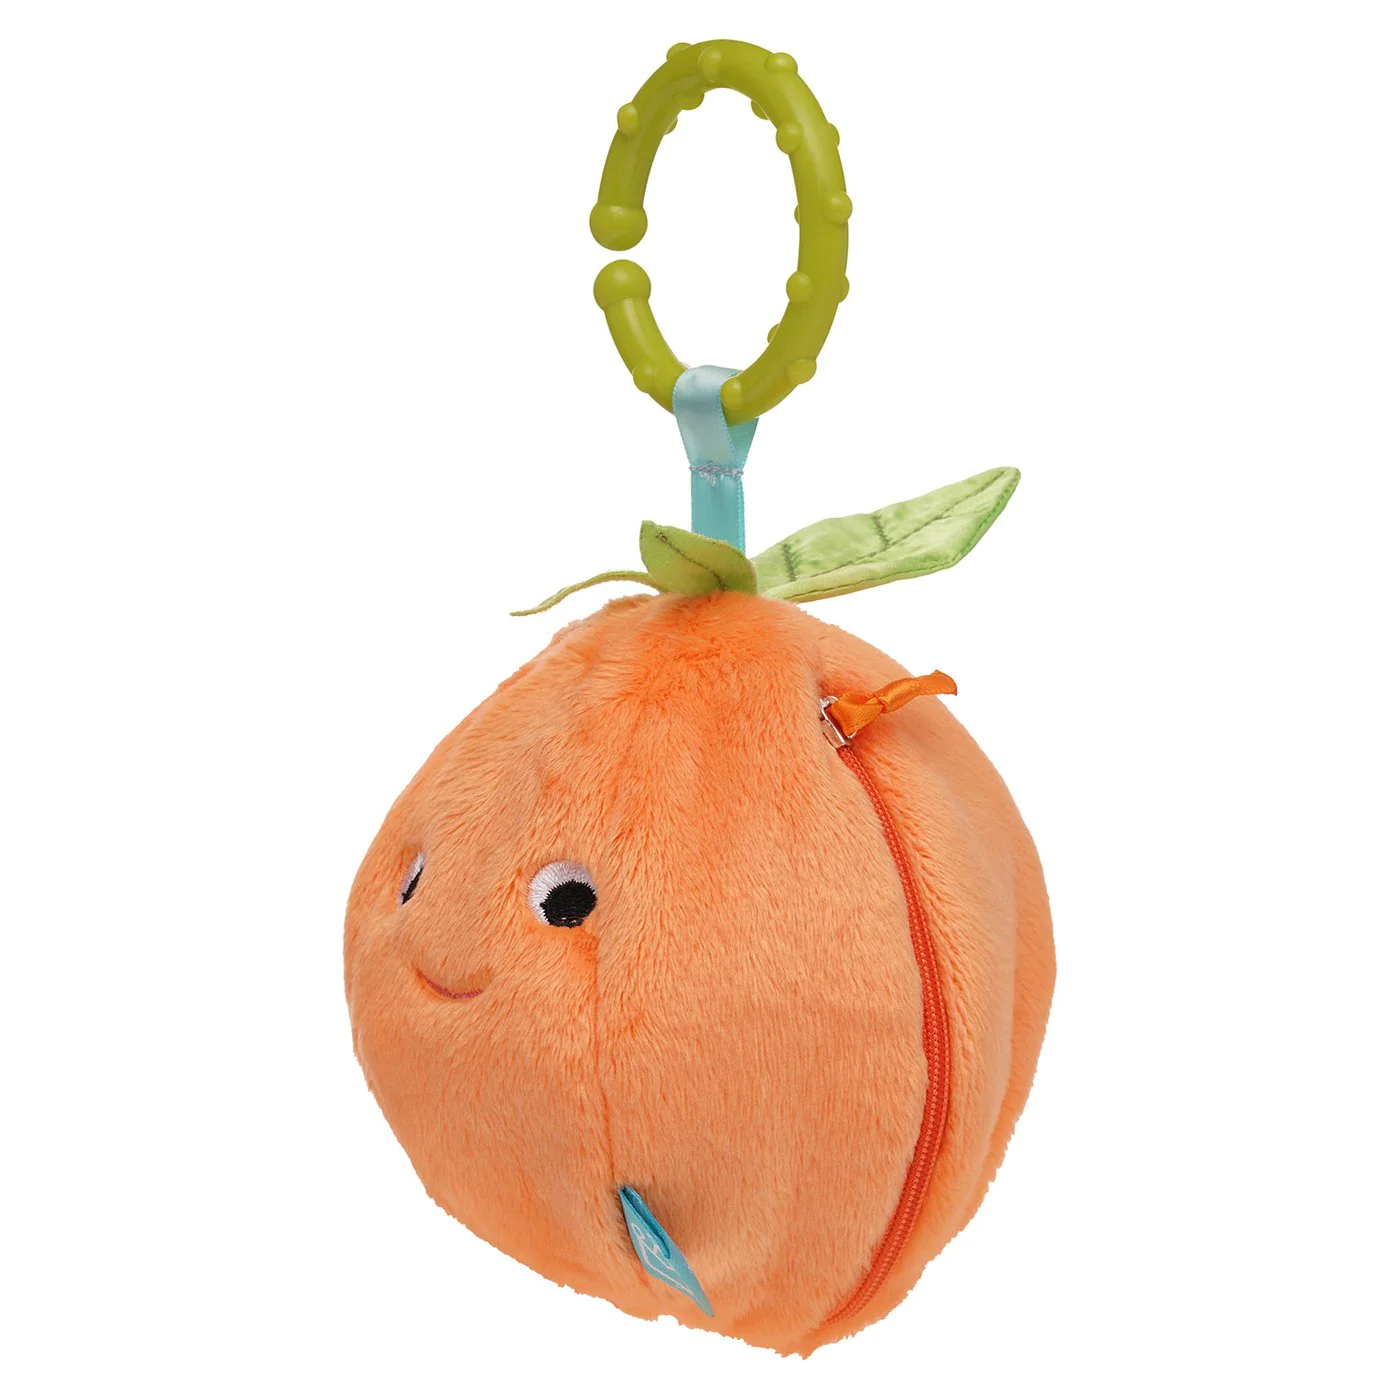 Manhatten Toy Mini-Apple Farm Orange Oransj - Inside